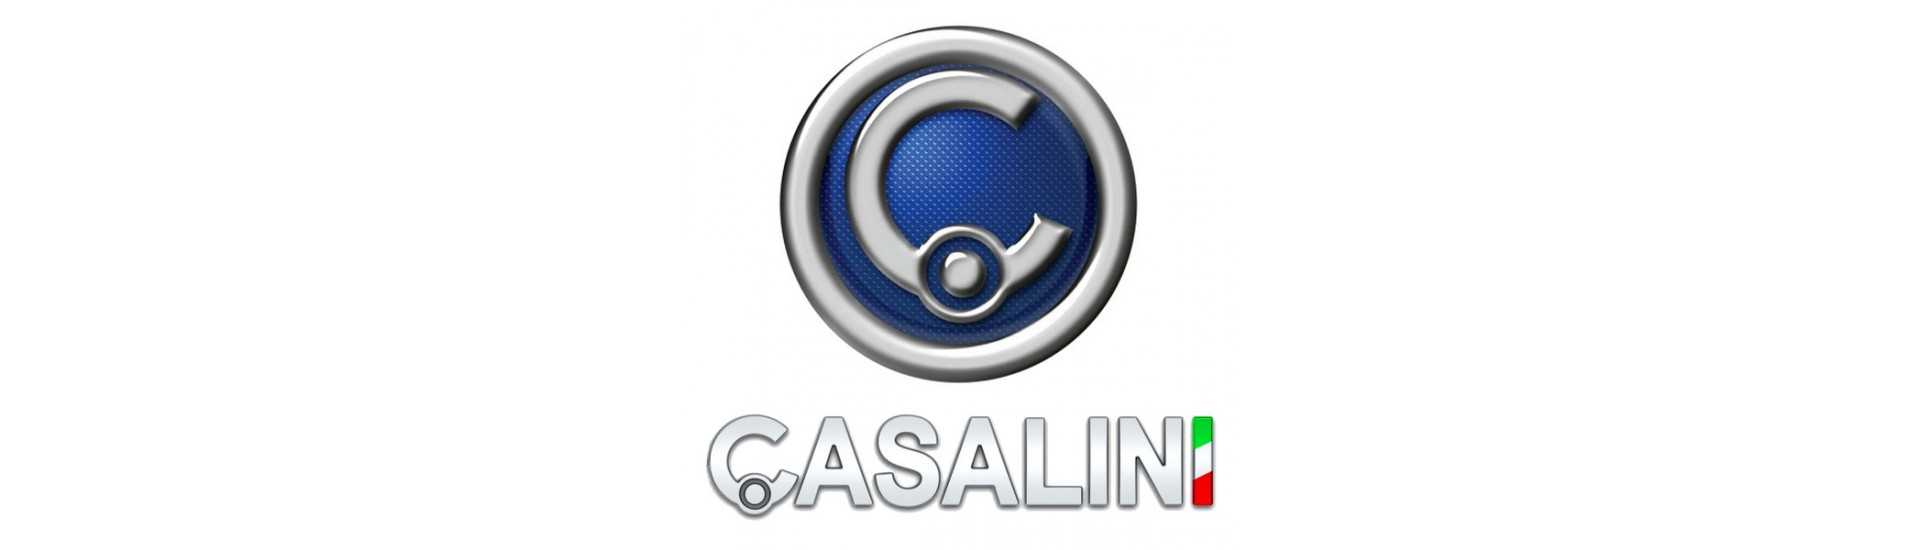 Vaihtoehtoinen vyö parhaalla autolla ilman lupaa Casalini